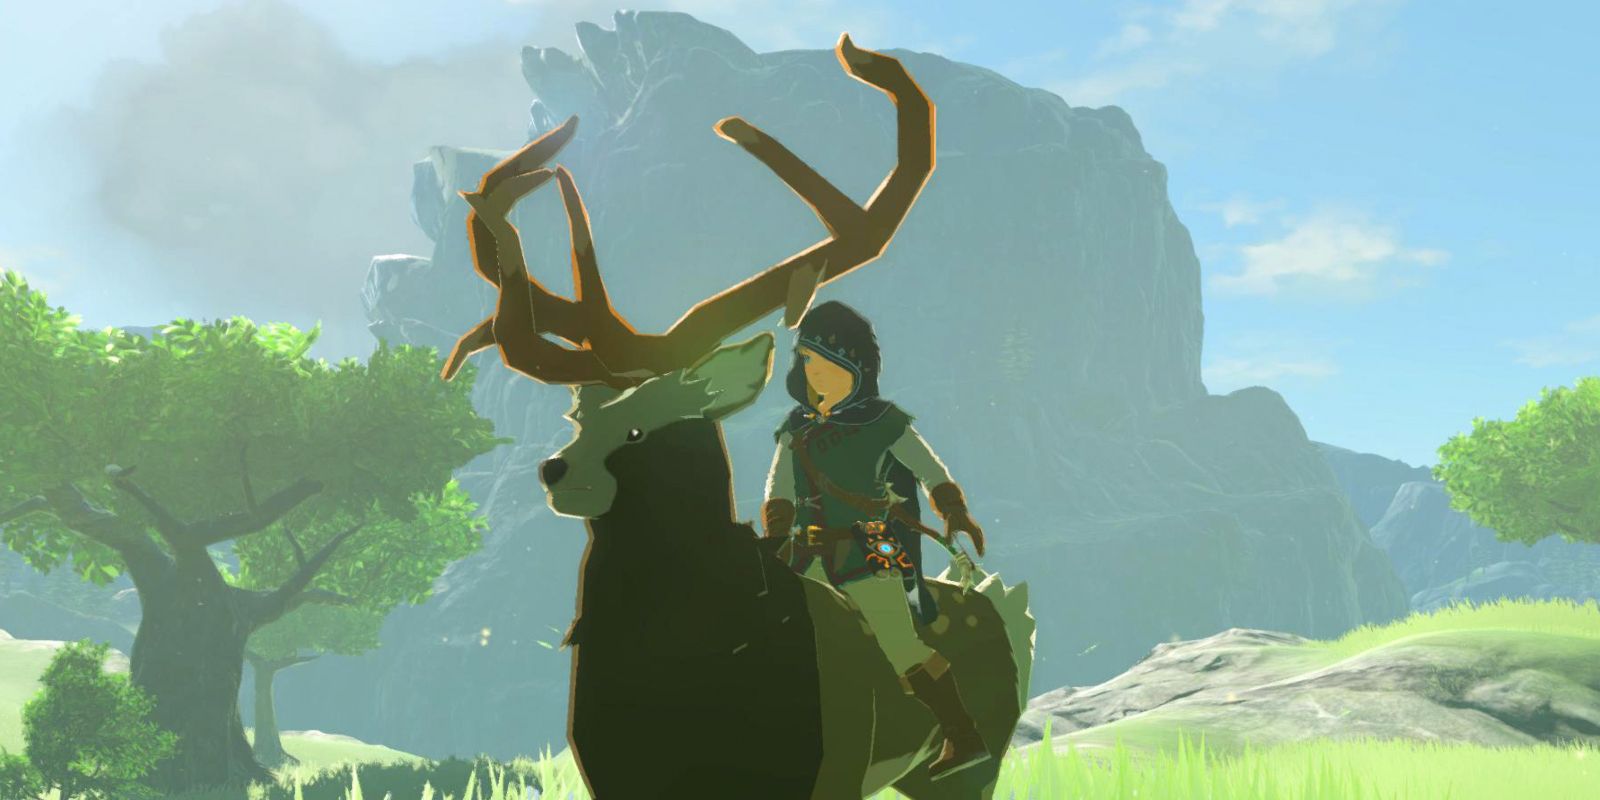 Zelda: Todos los enlaces de animales salvajes pueden viajar en BOTW |